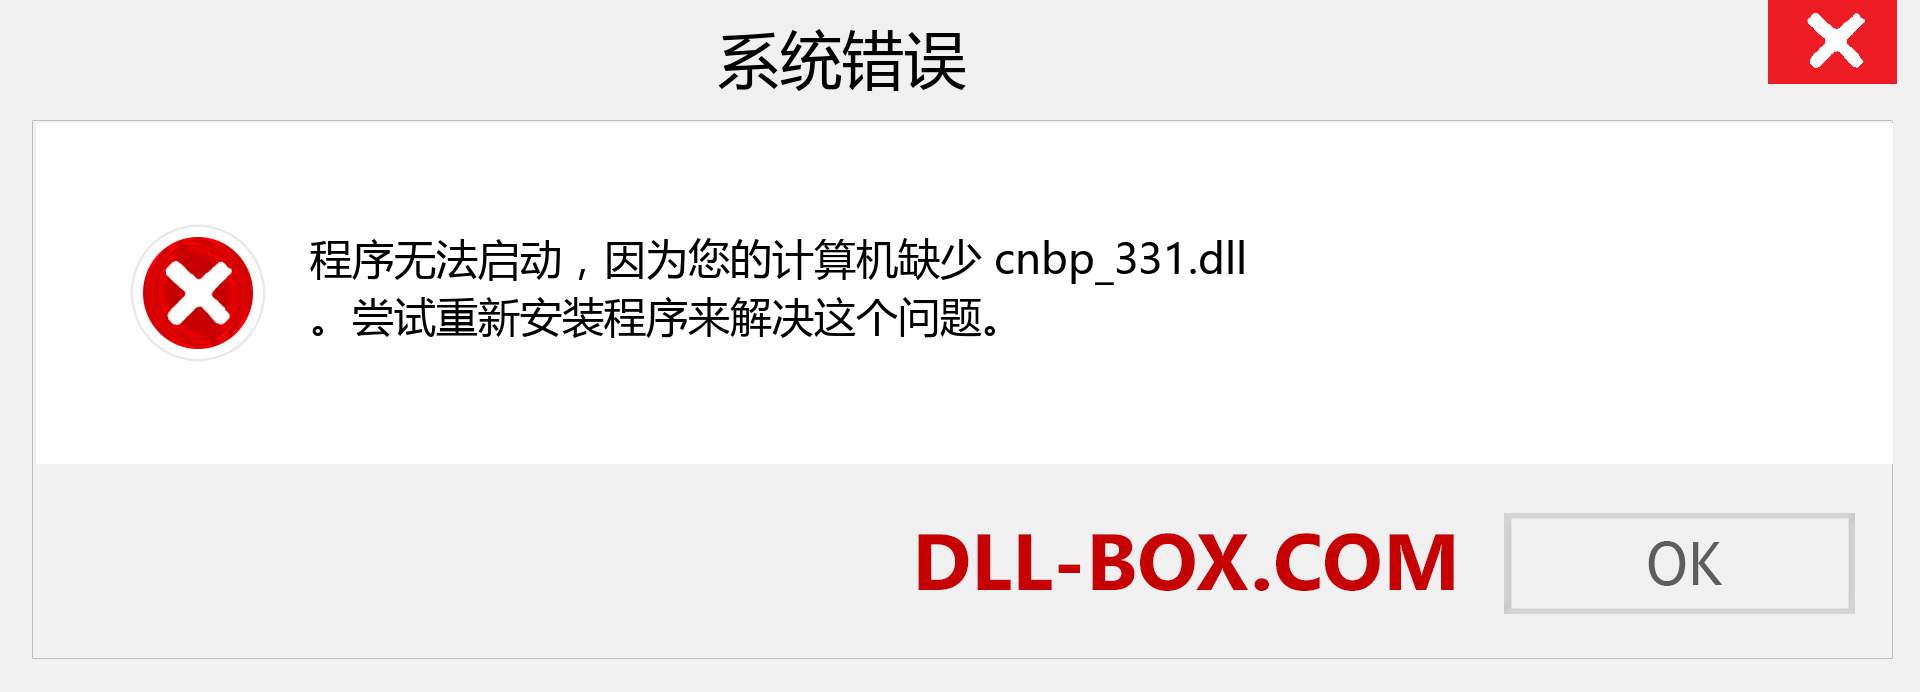 cnbp_331.dll 文件丢失？。 适用于 Windows 7、8、10 的下载 - 修复 Windows、照片、图像上的 cnbp_331 dll 丢失错误